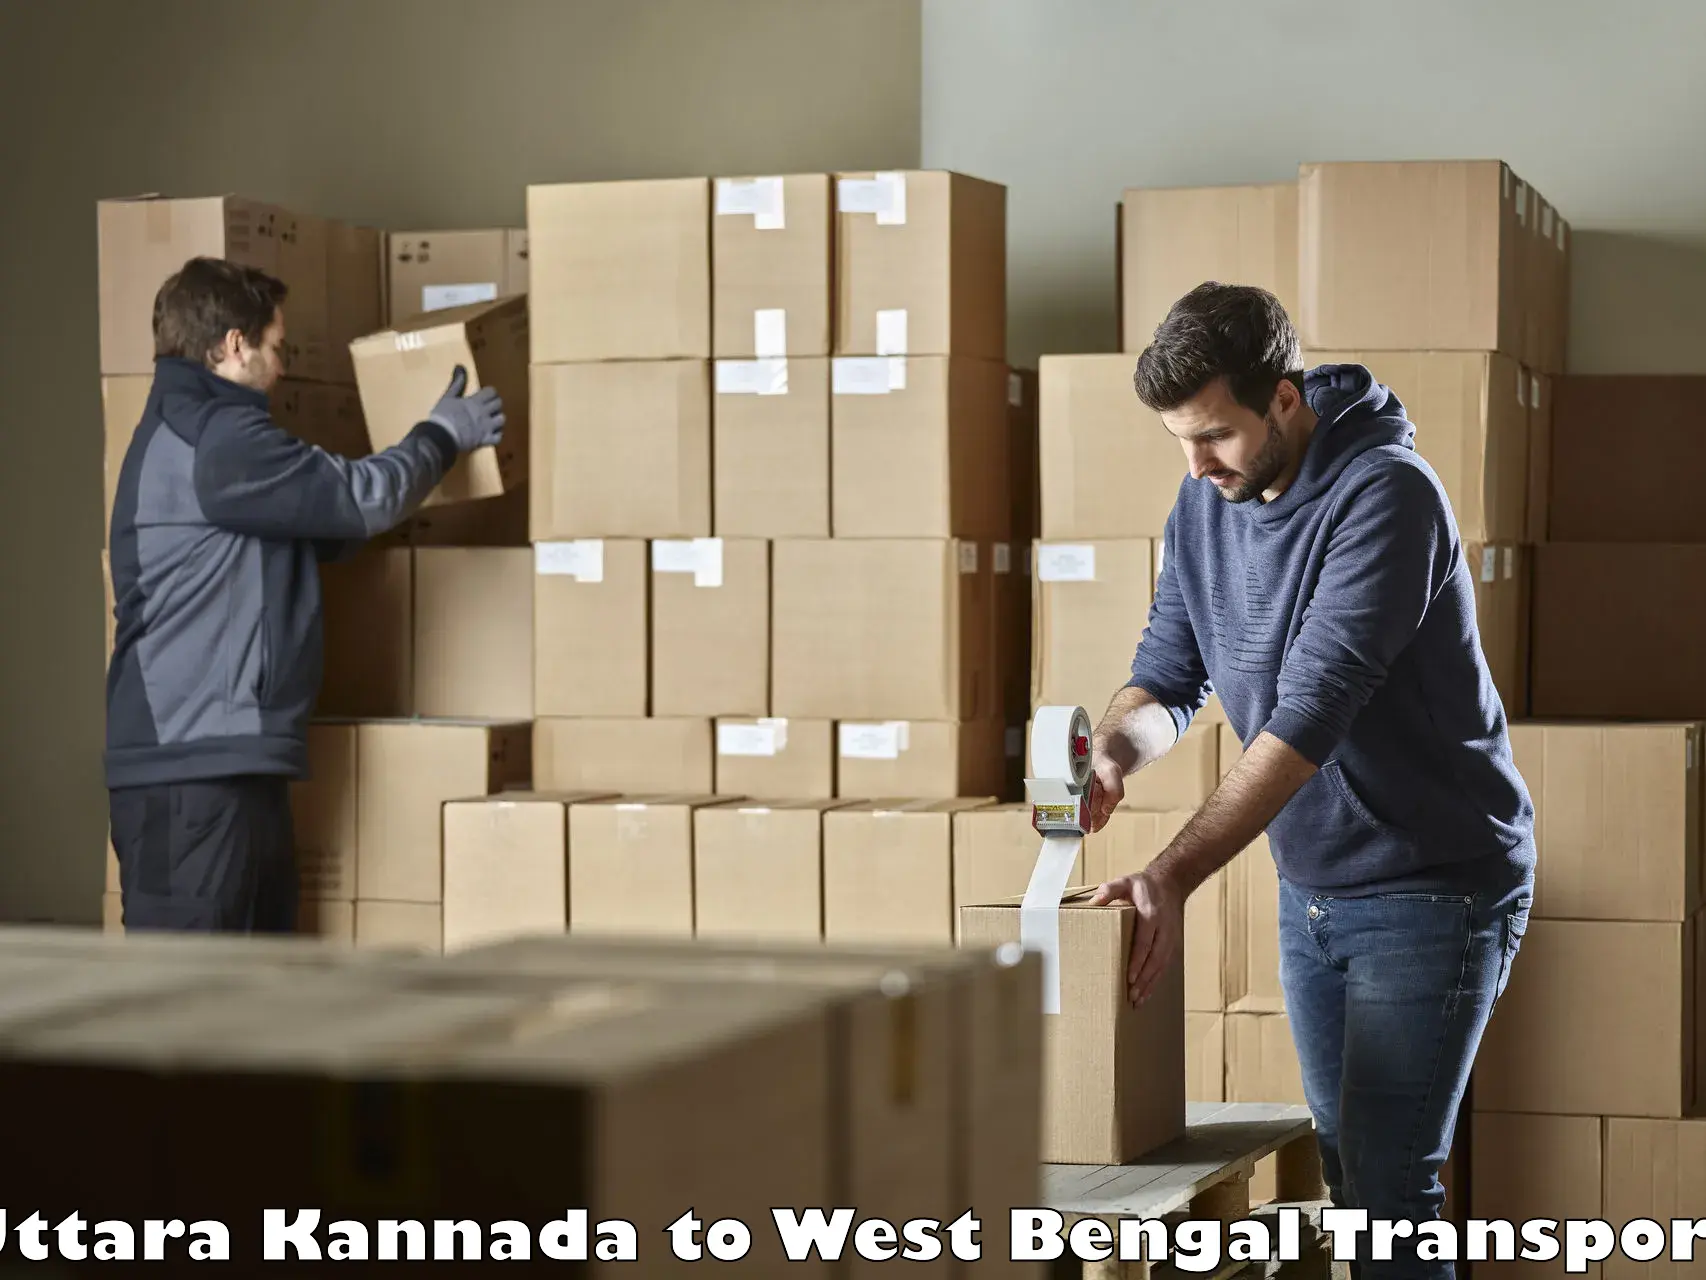 Commercial transport service Uttara Kannada to Belda